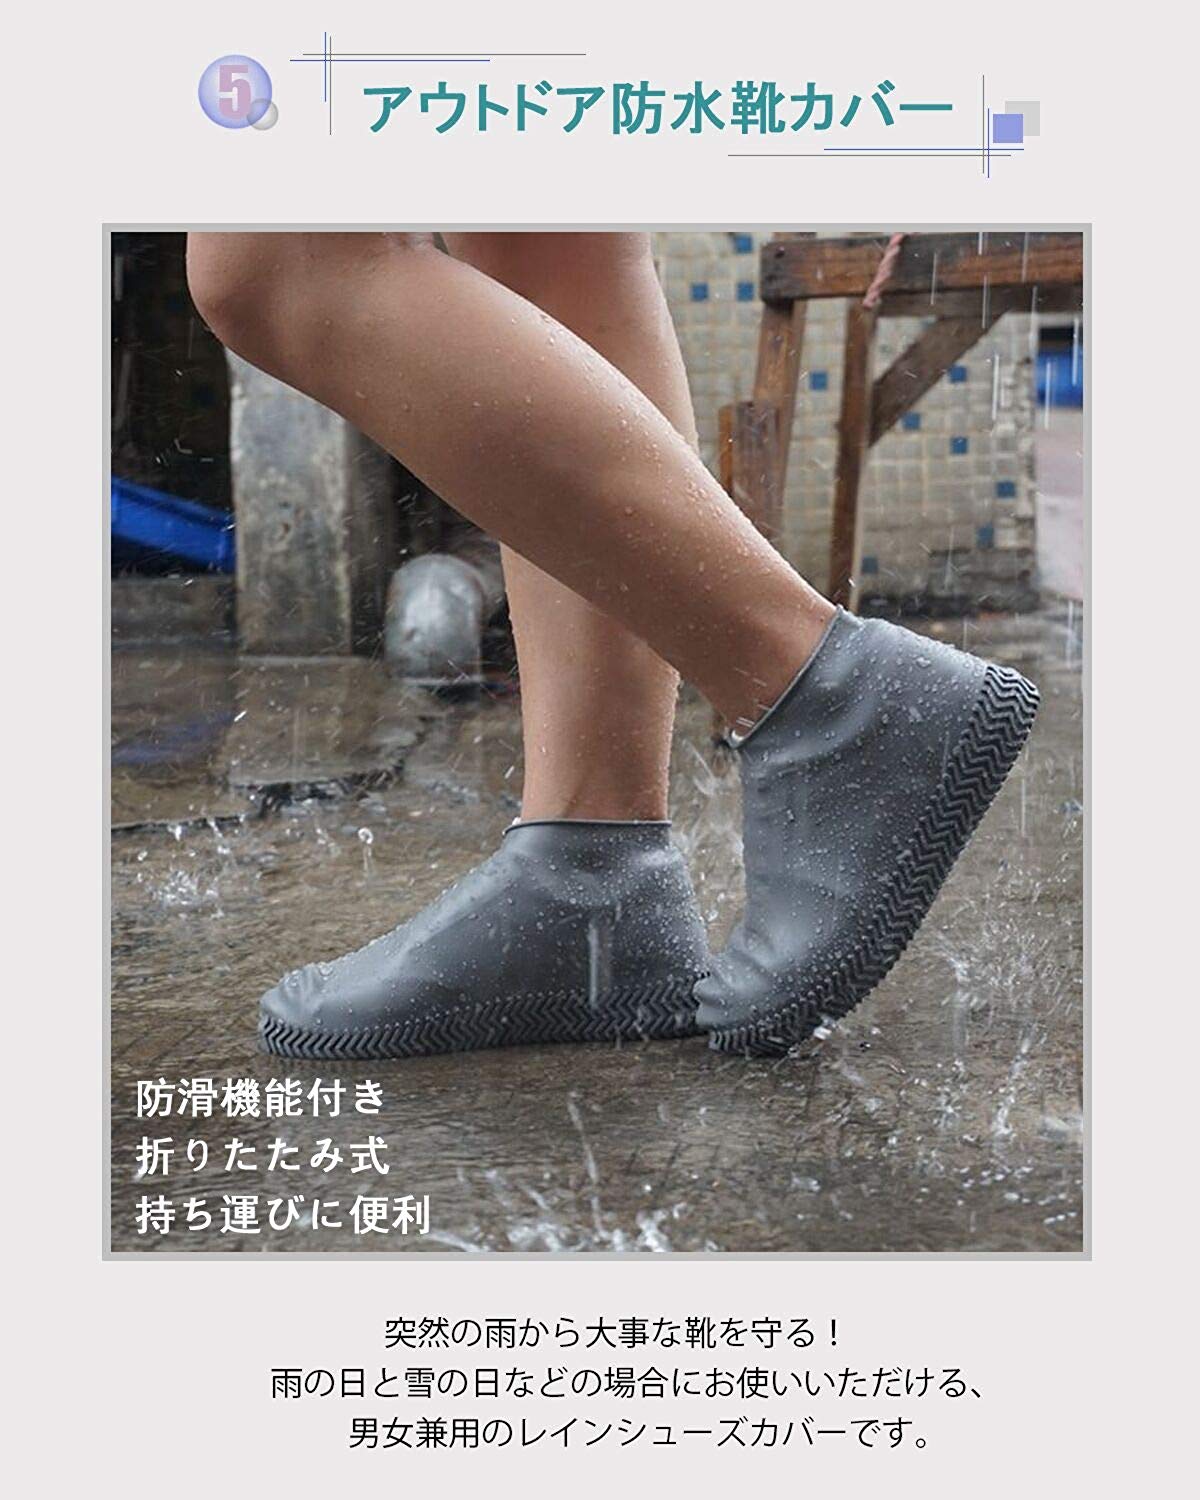 雨の日に靴が濡れるのを防ぐ Smilefoot シューズカバー レビュー 防水性能は良いが滑りやすいのが難点 クリエイタークリップ